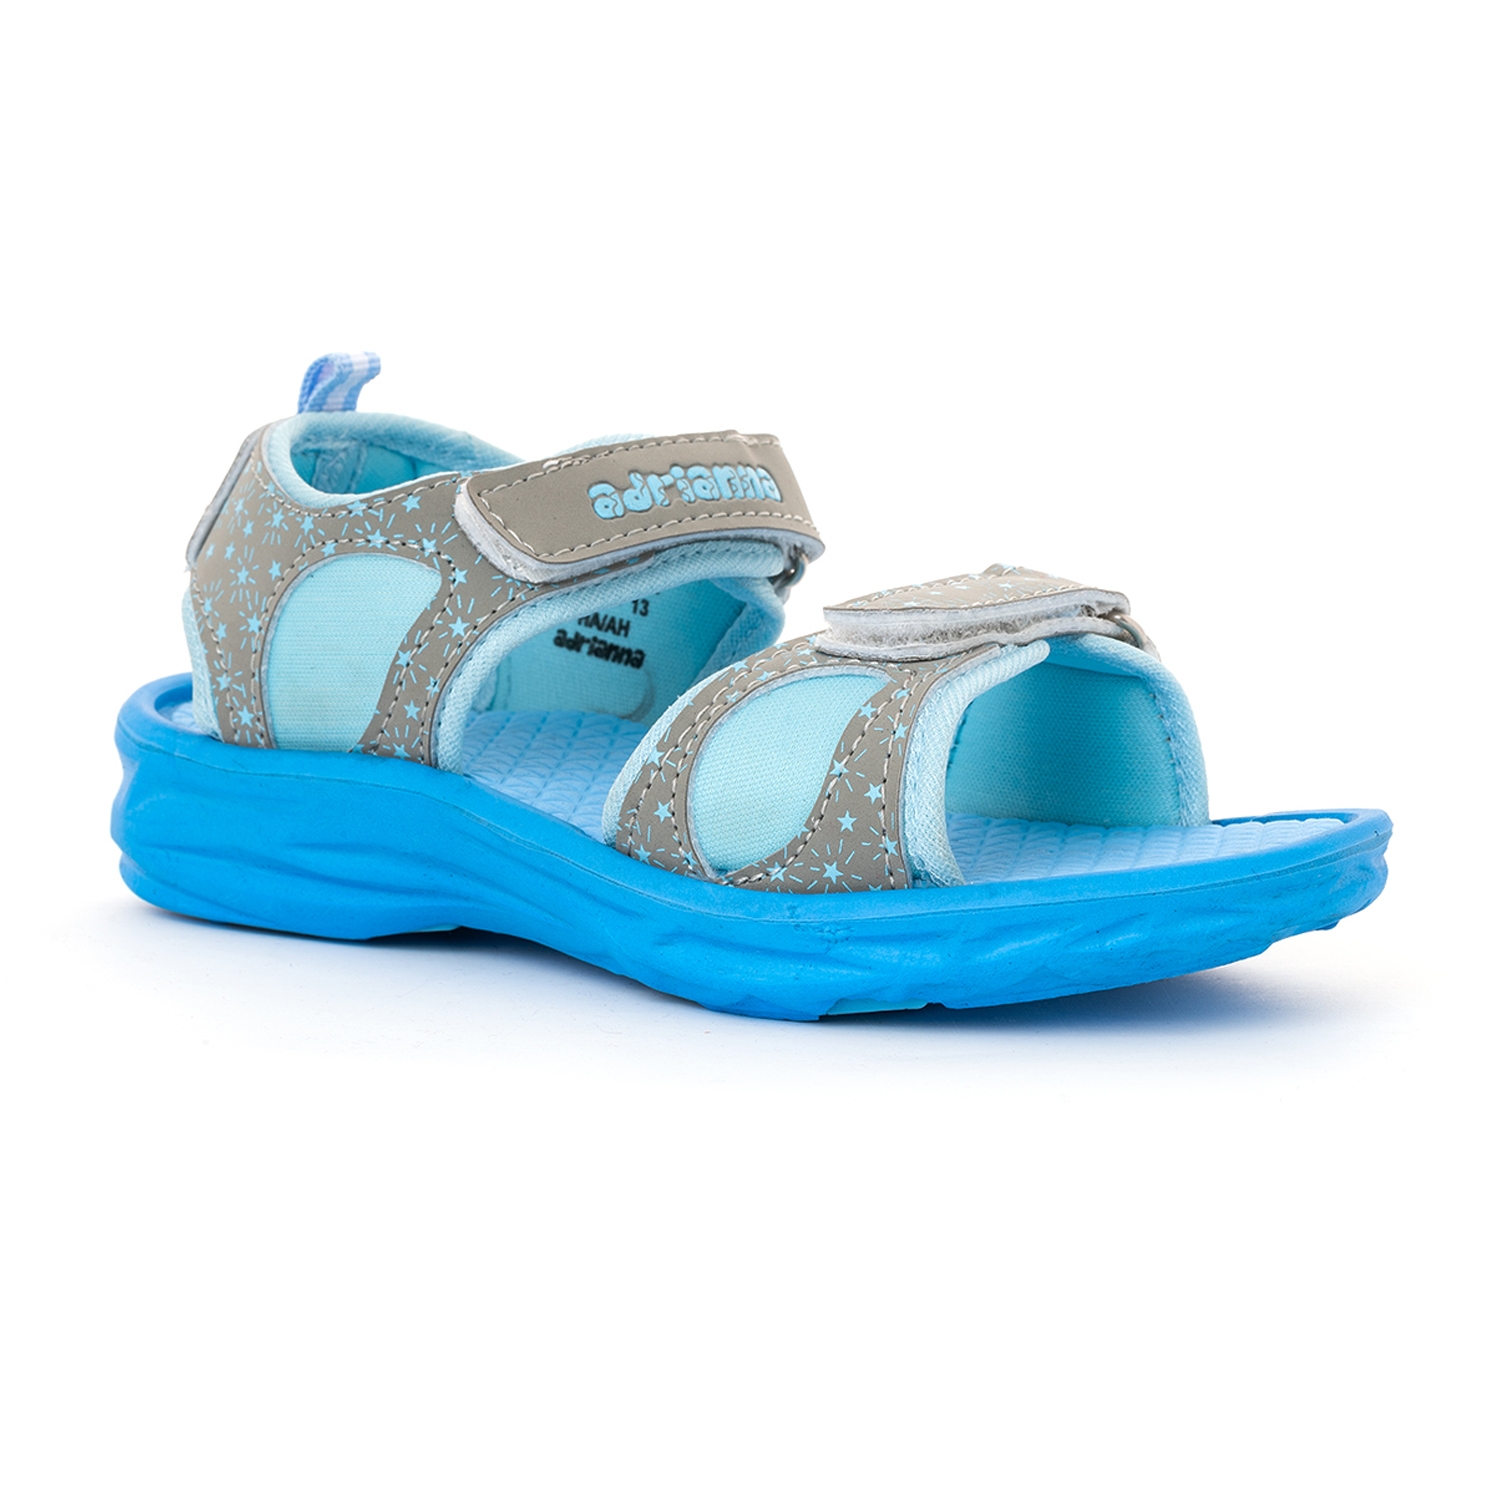 Adrianna Grey Floater Sandal for Girls